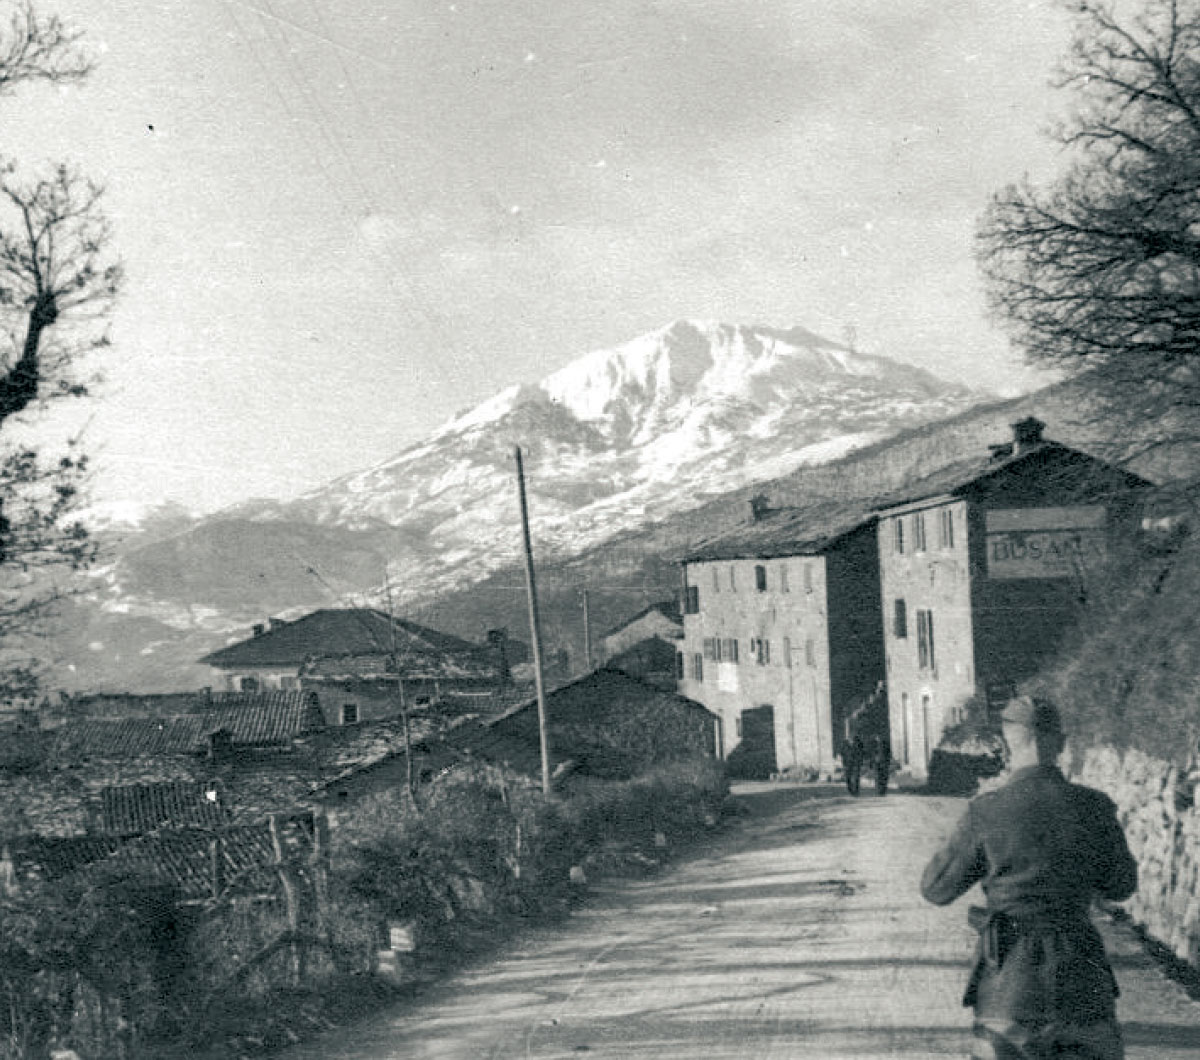 Deutscher Soldat auf der alten Staatsstraße SS63 am Ortseingang von Busana. Im Hintergrund ist der Monte Casarola, Frühjahr 1945